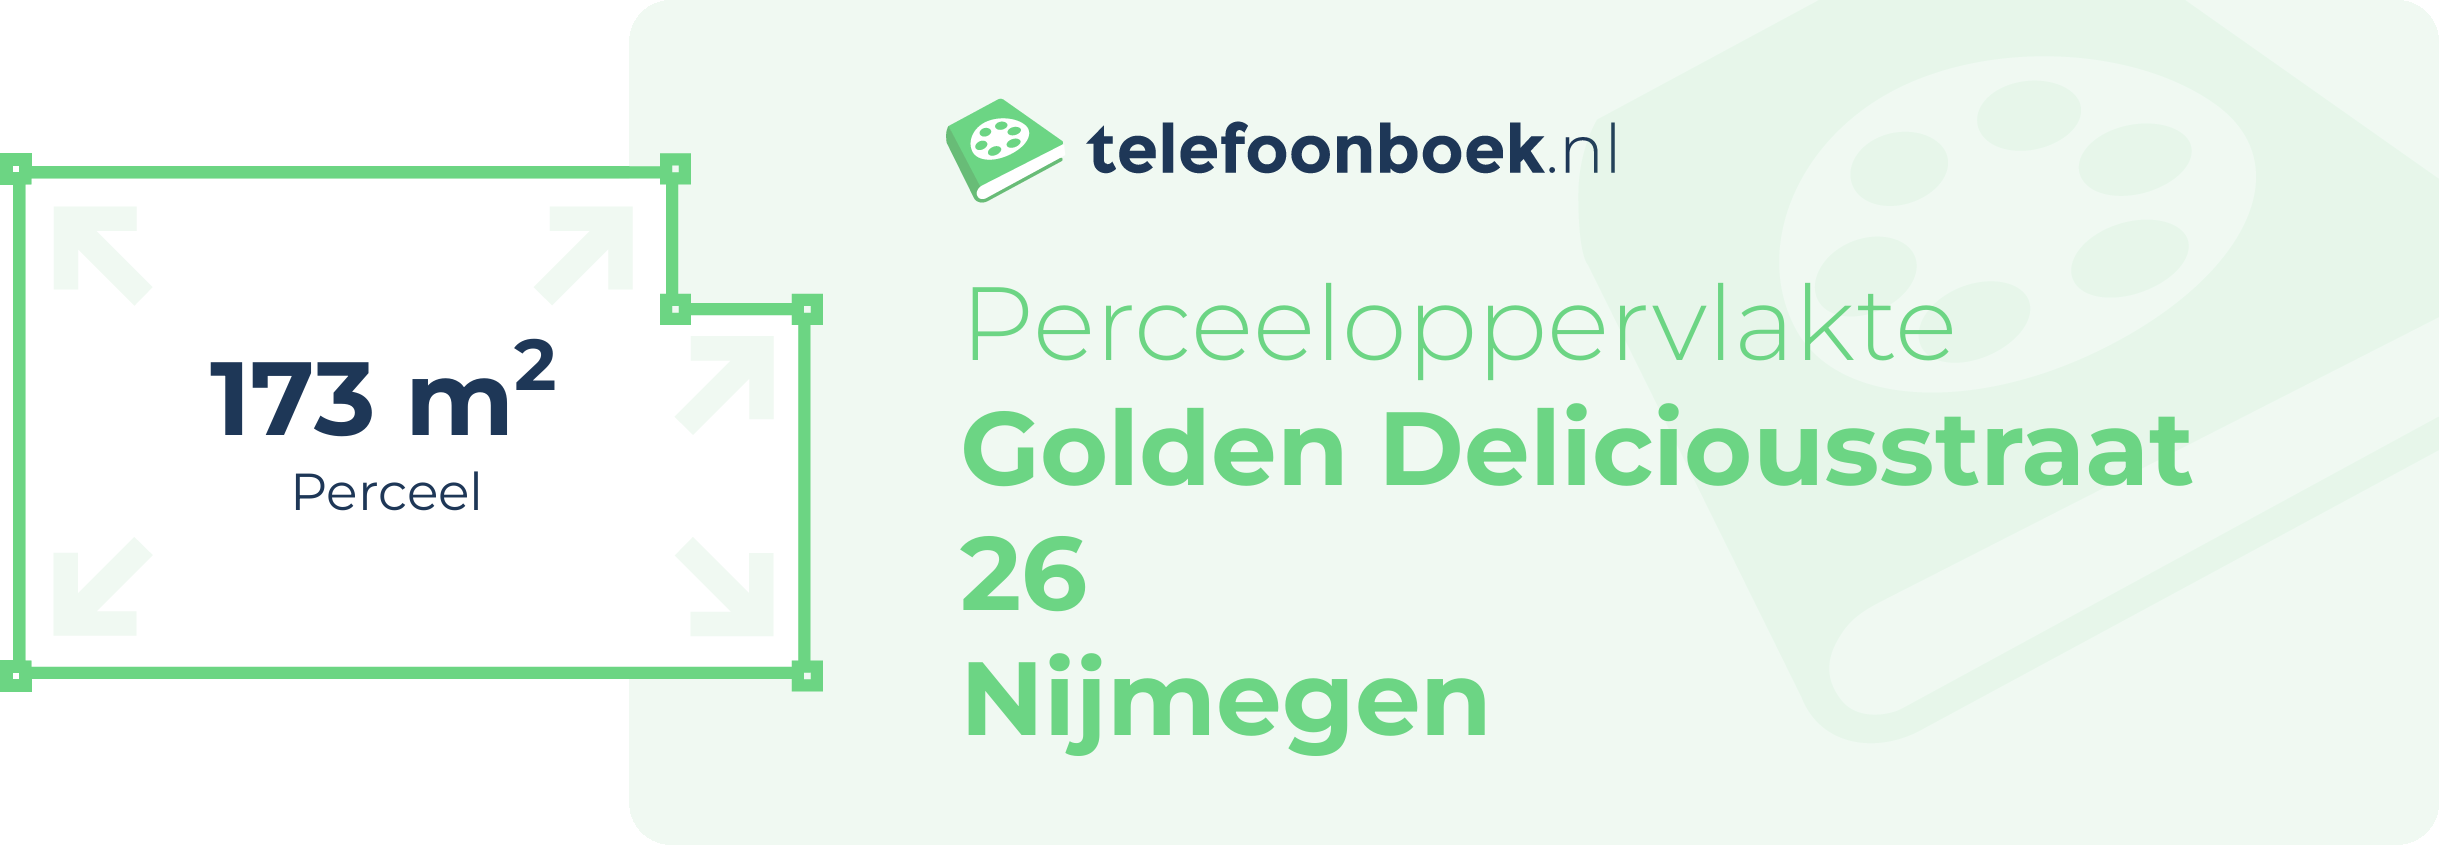 Perceeloppervlakte Golden Deliciousstraat 26 Nijmegen